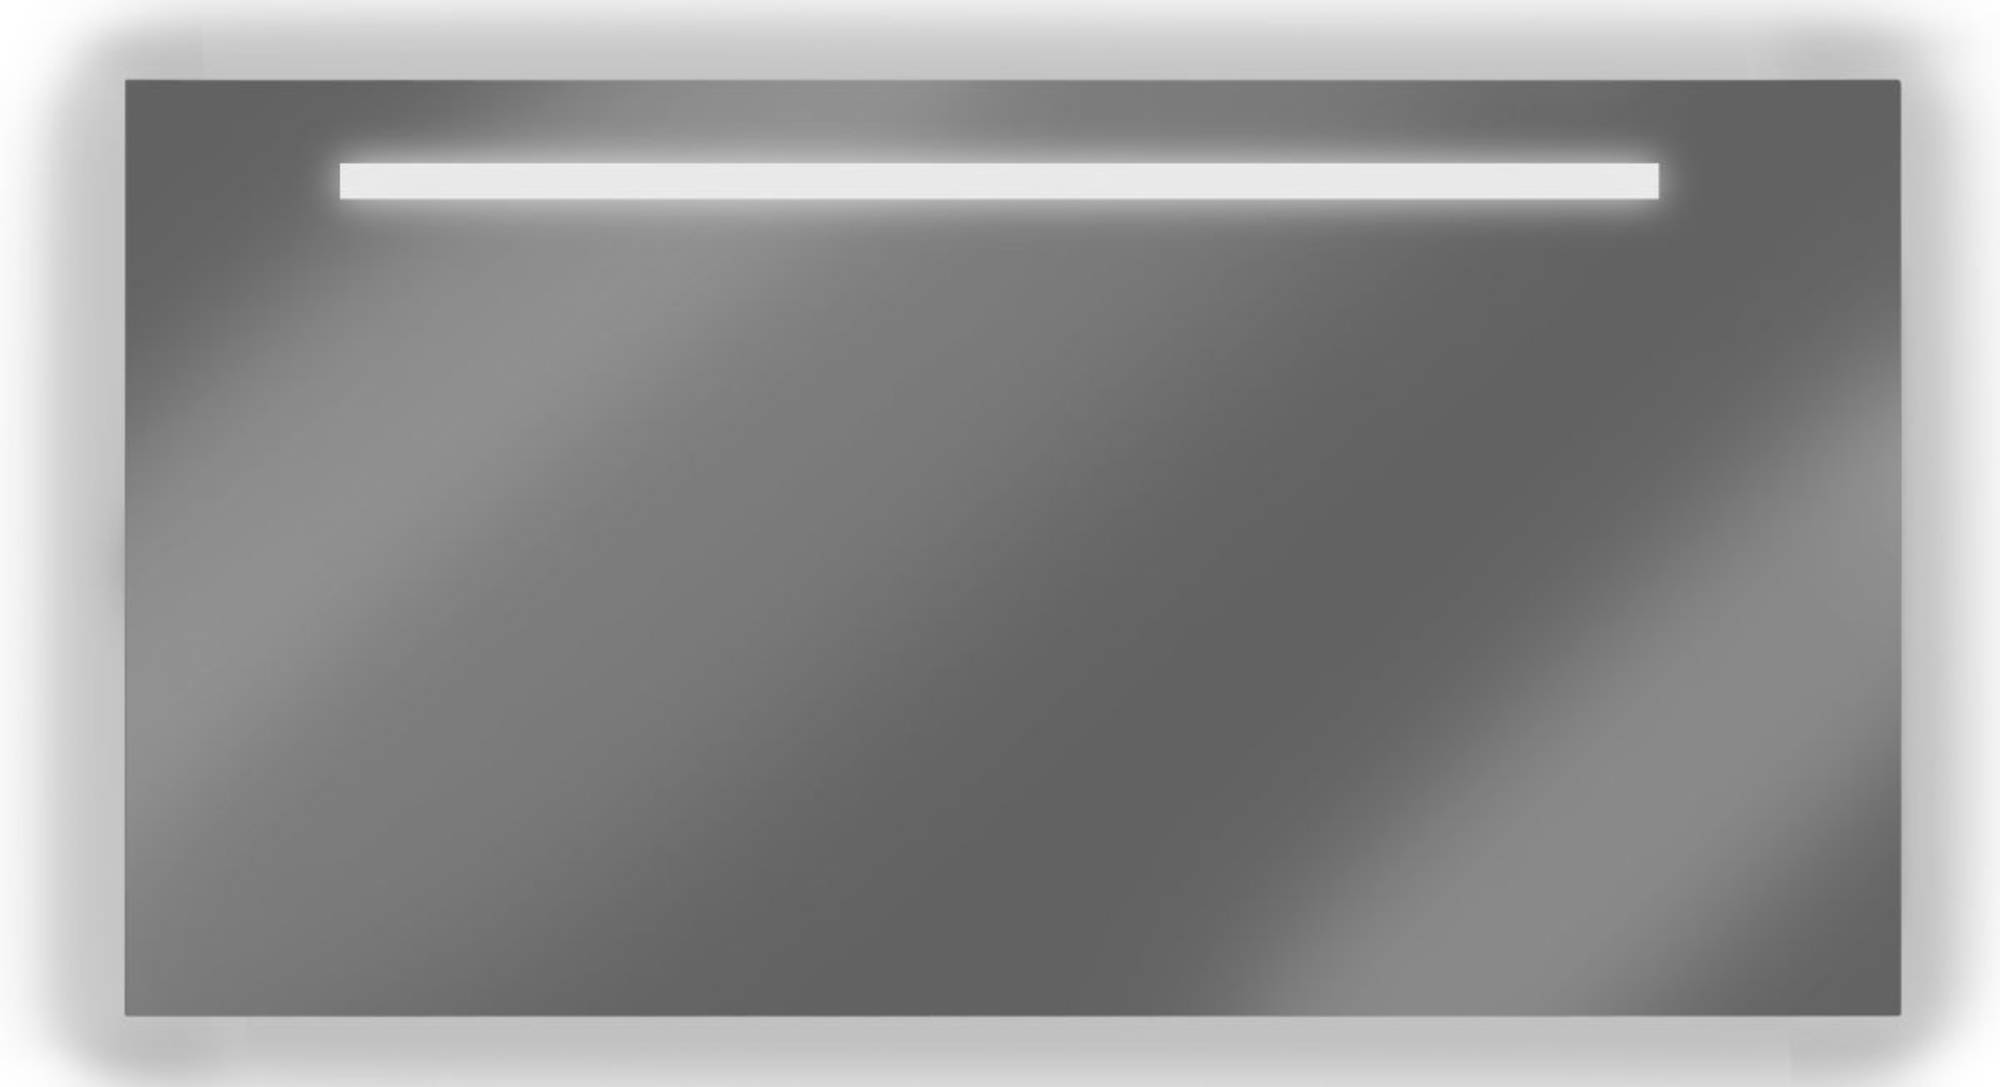 Lijm Stewart Island Hobart Looox X-Line spiegel 140x70 cm. led verlichting met anticondens - Saniweb.nl